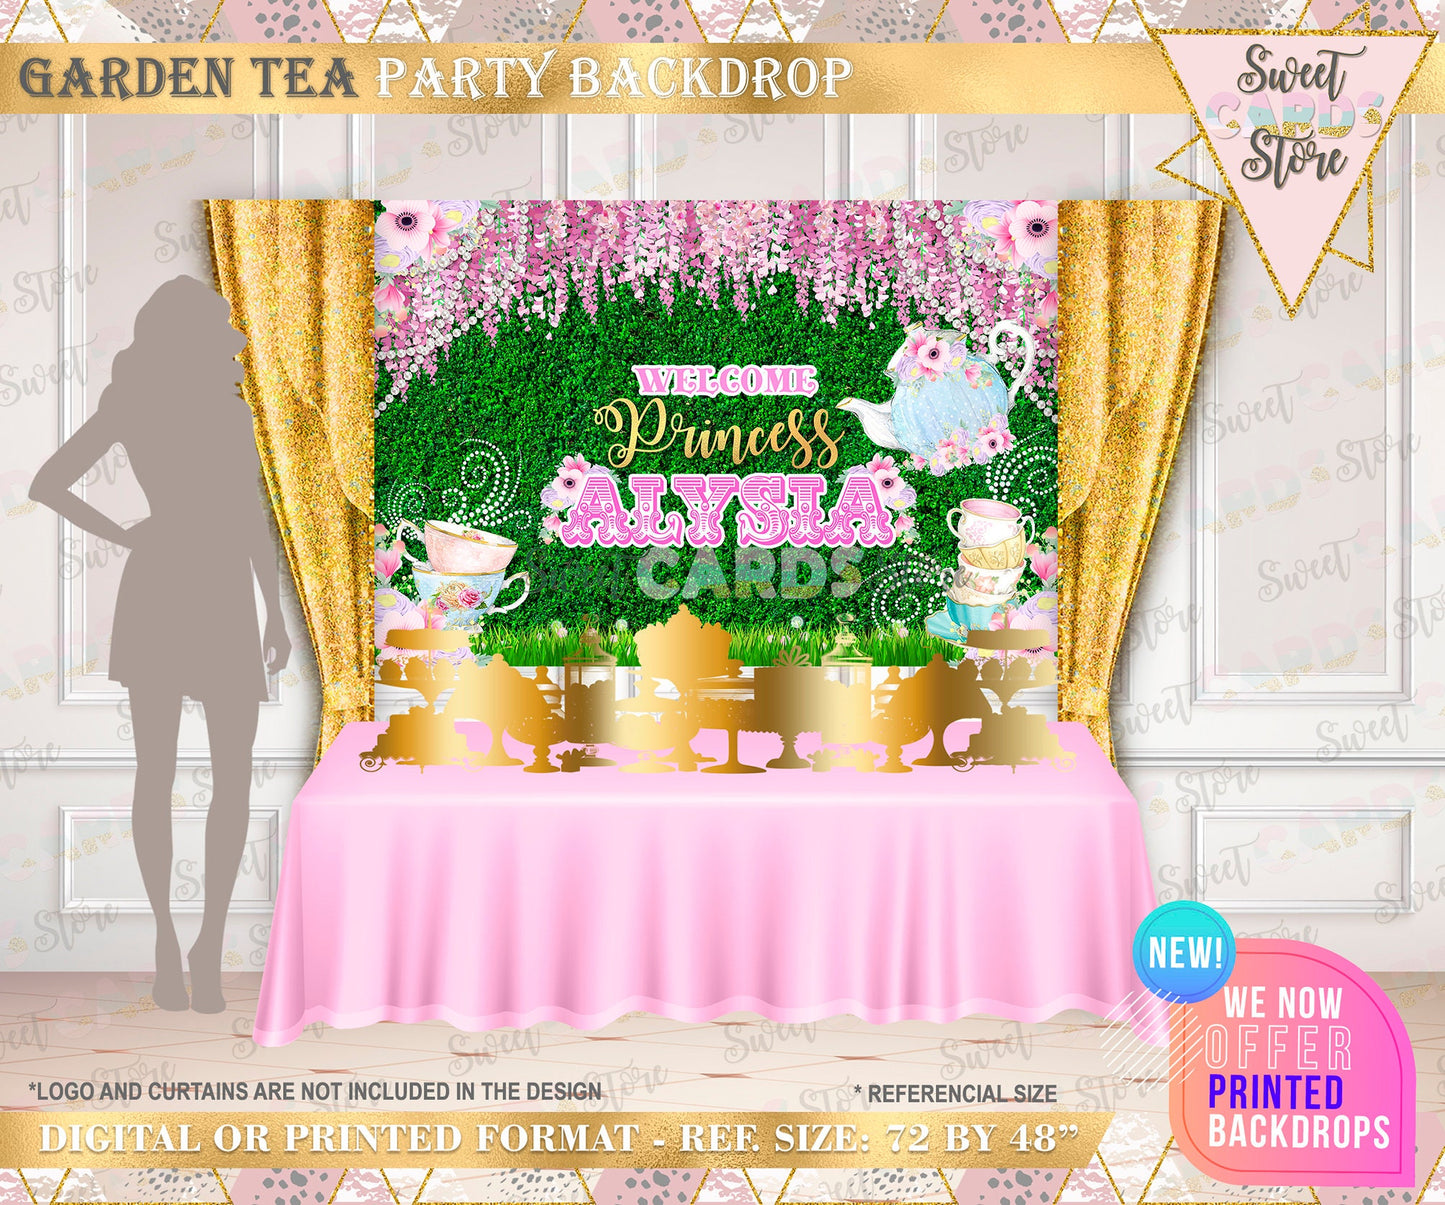 Garden Tea party backdrop, Tea birthday party backdrop, Garden tea party banner, tea party banner, floral garden tea party backdrop fairy